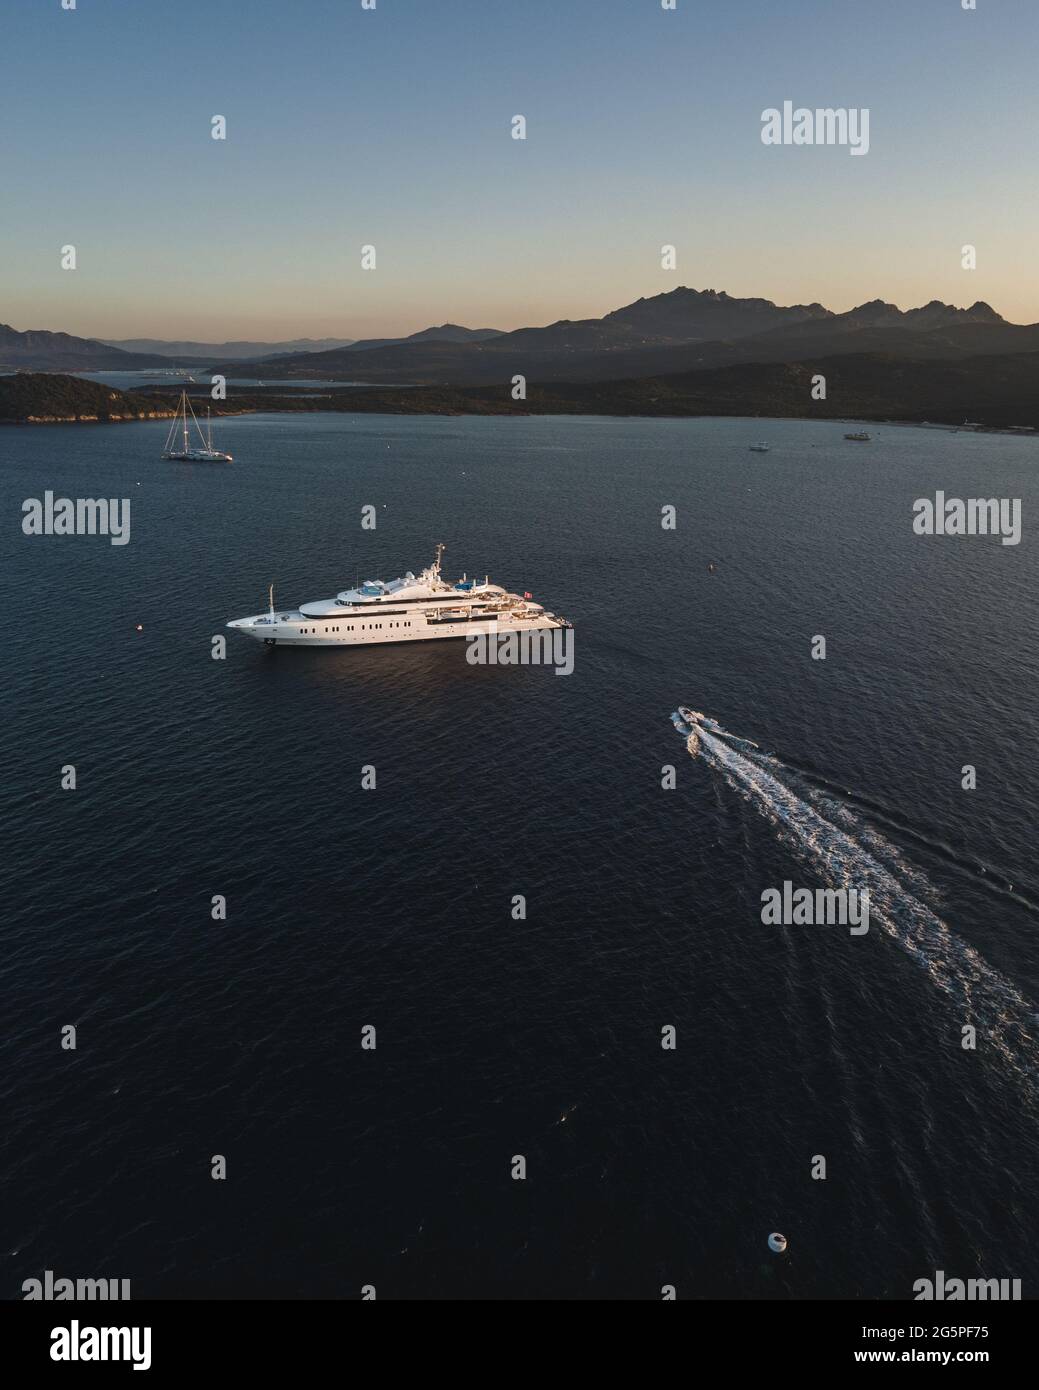 SARDINIEN, ITALY - Jul 05, 2019: mega luxus yacht in sardinia italy sea Stock Photo